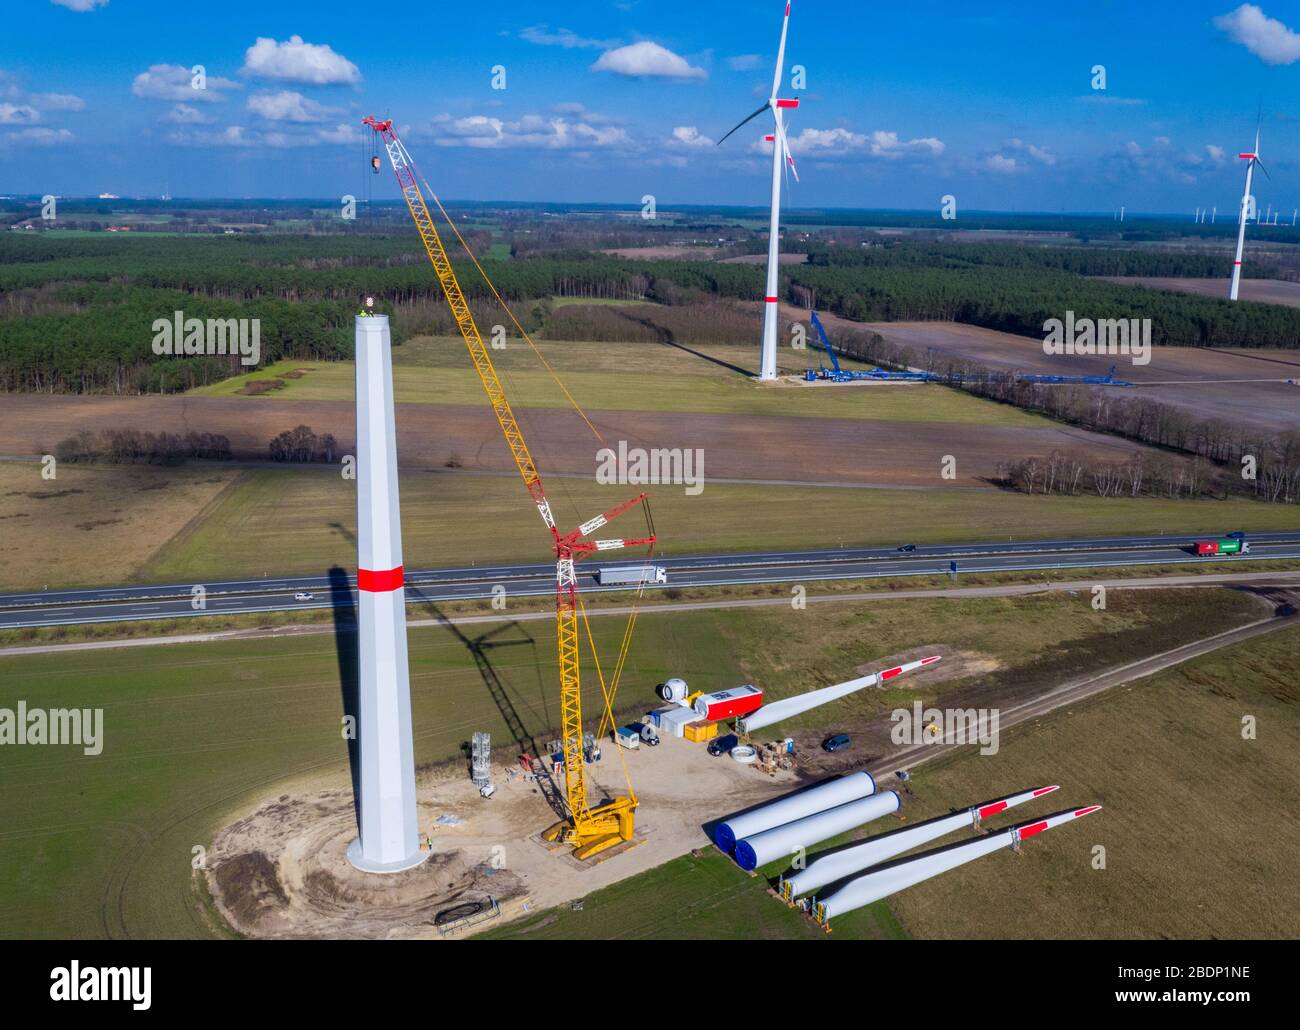 05 mars 2020, Mecklembourg-Poméranie occidentale, Hoort: Les pales de rotor  et la nacelle d'une nouvelle éolienne sont situées sur un site de  construction à la ferme éolienne de Hoort au sud de